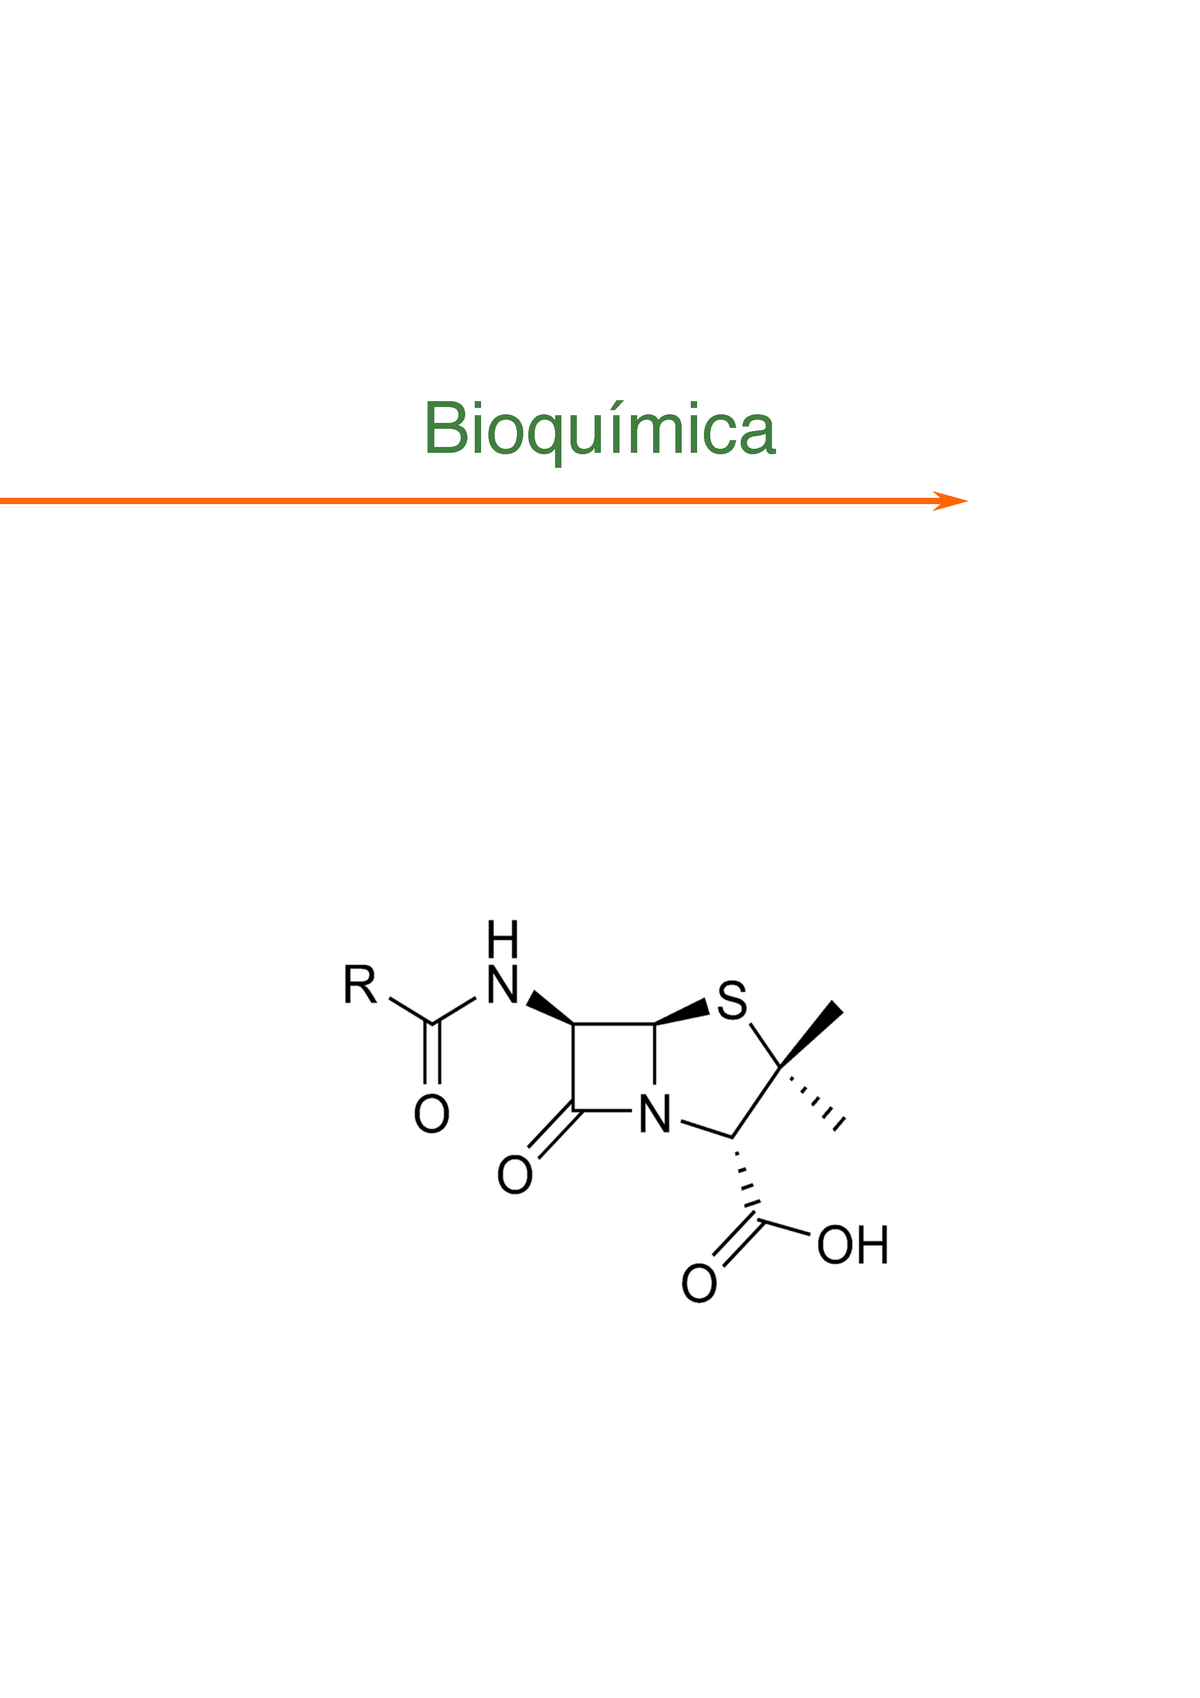 Bioquimica Apuntes Bioquímica Temario Parte I Principales